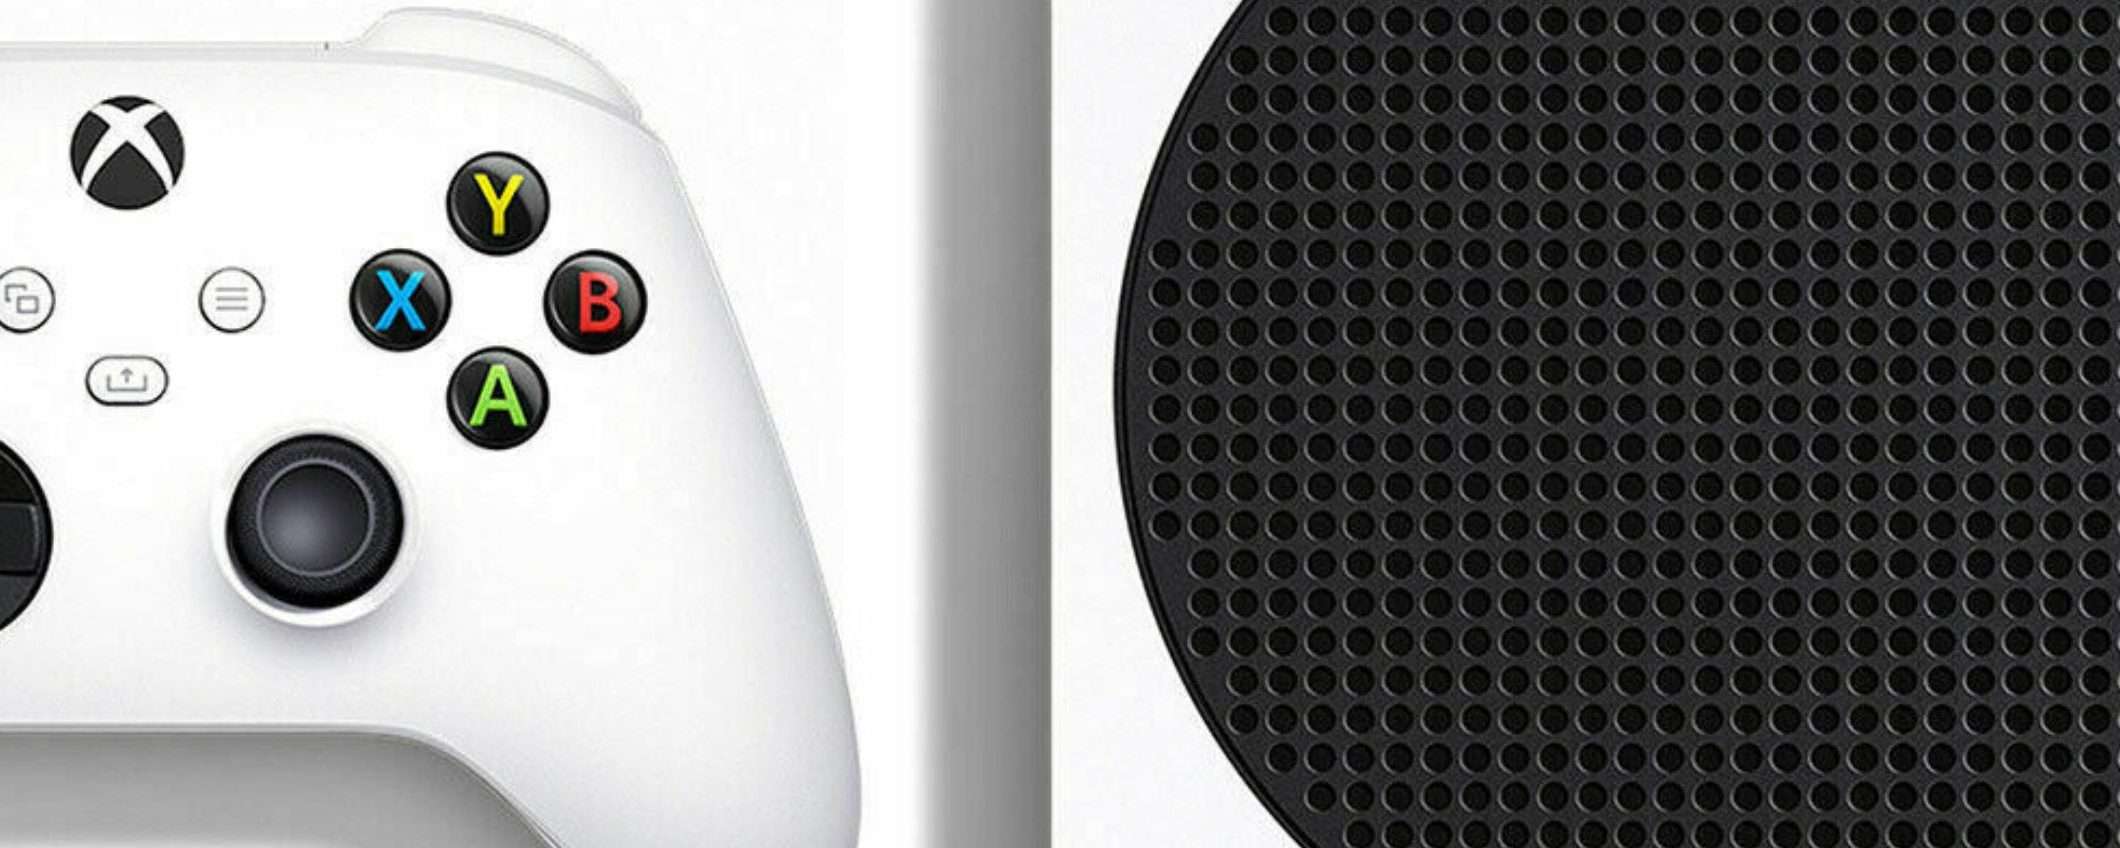 Xbox Series S a 173€: falla tua prima del sold out